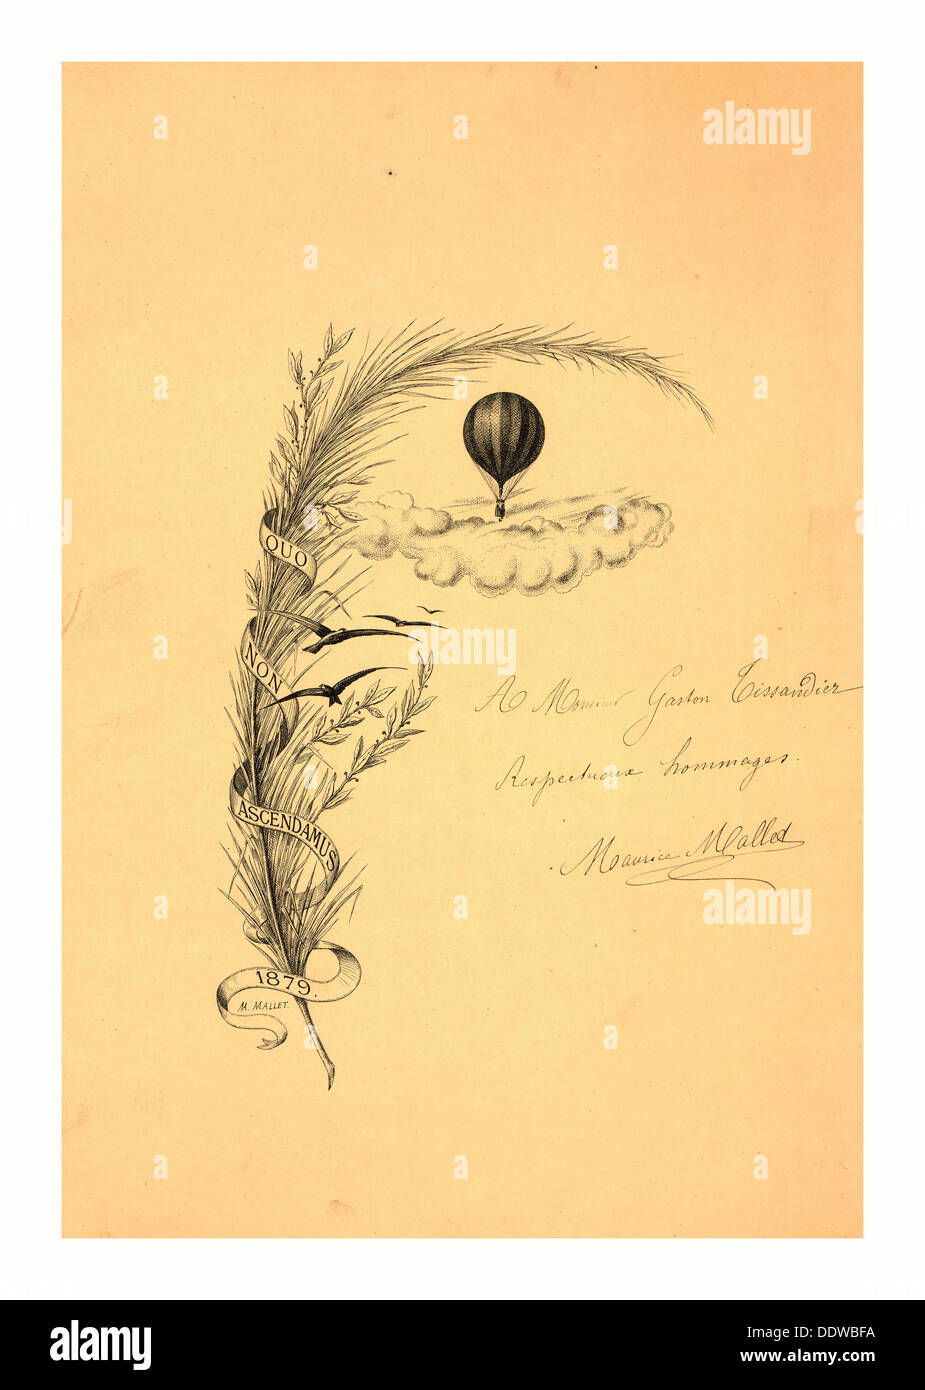 Papeterie illustrée avec une tige de blé enveloppés dans une bannière marqué non quo ascendamus 1879' et un vol en montgolfière Banque D'Images